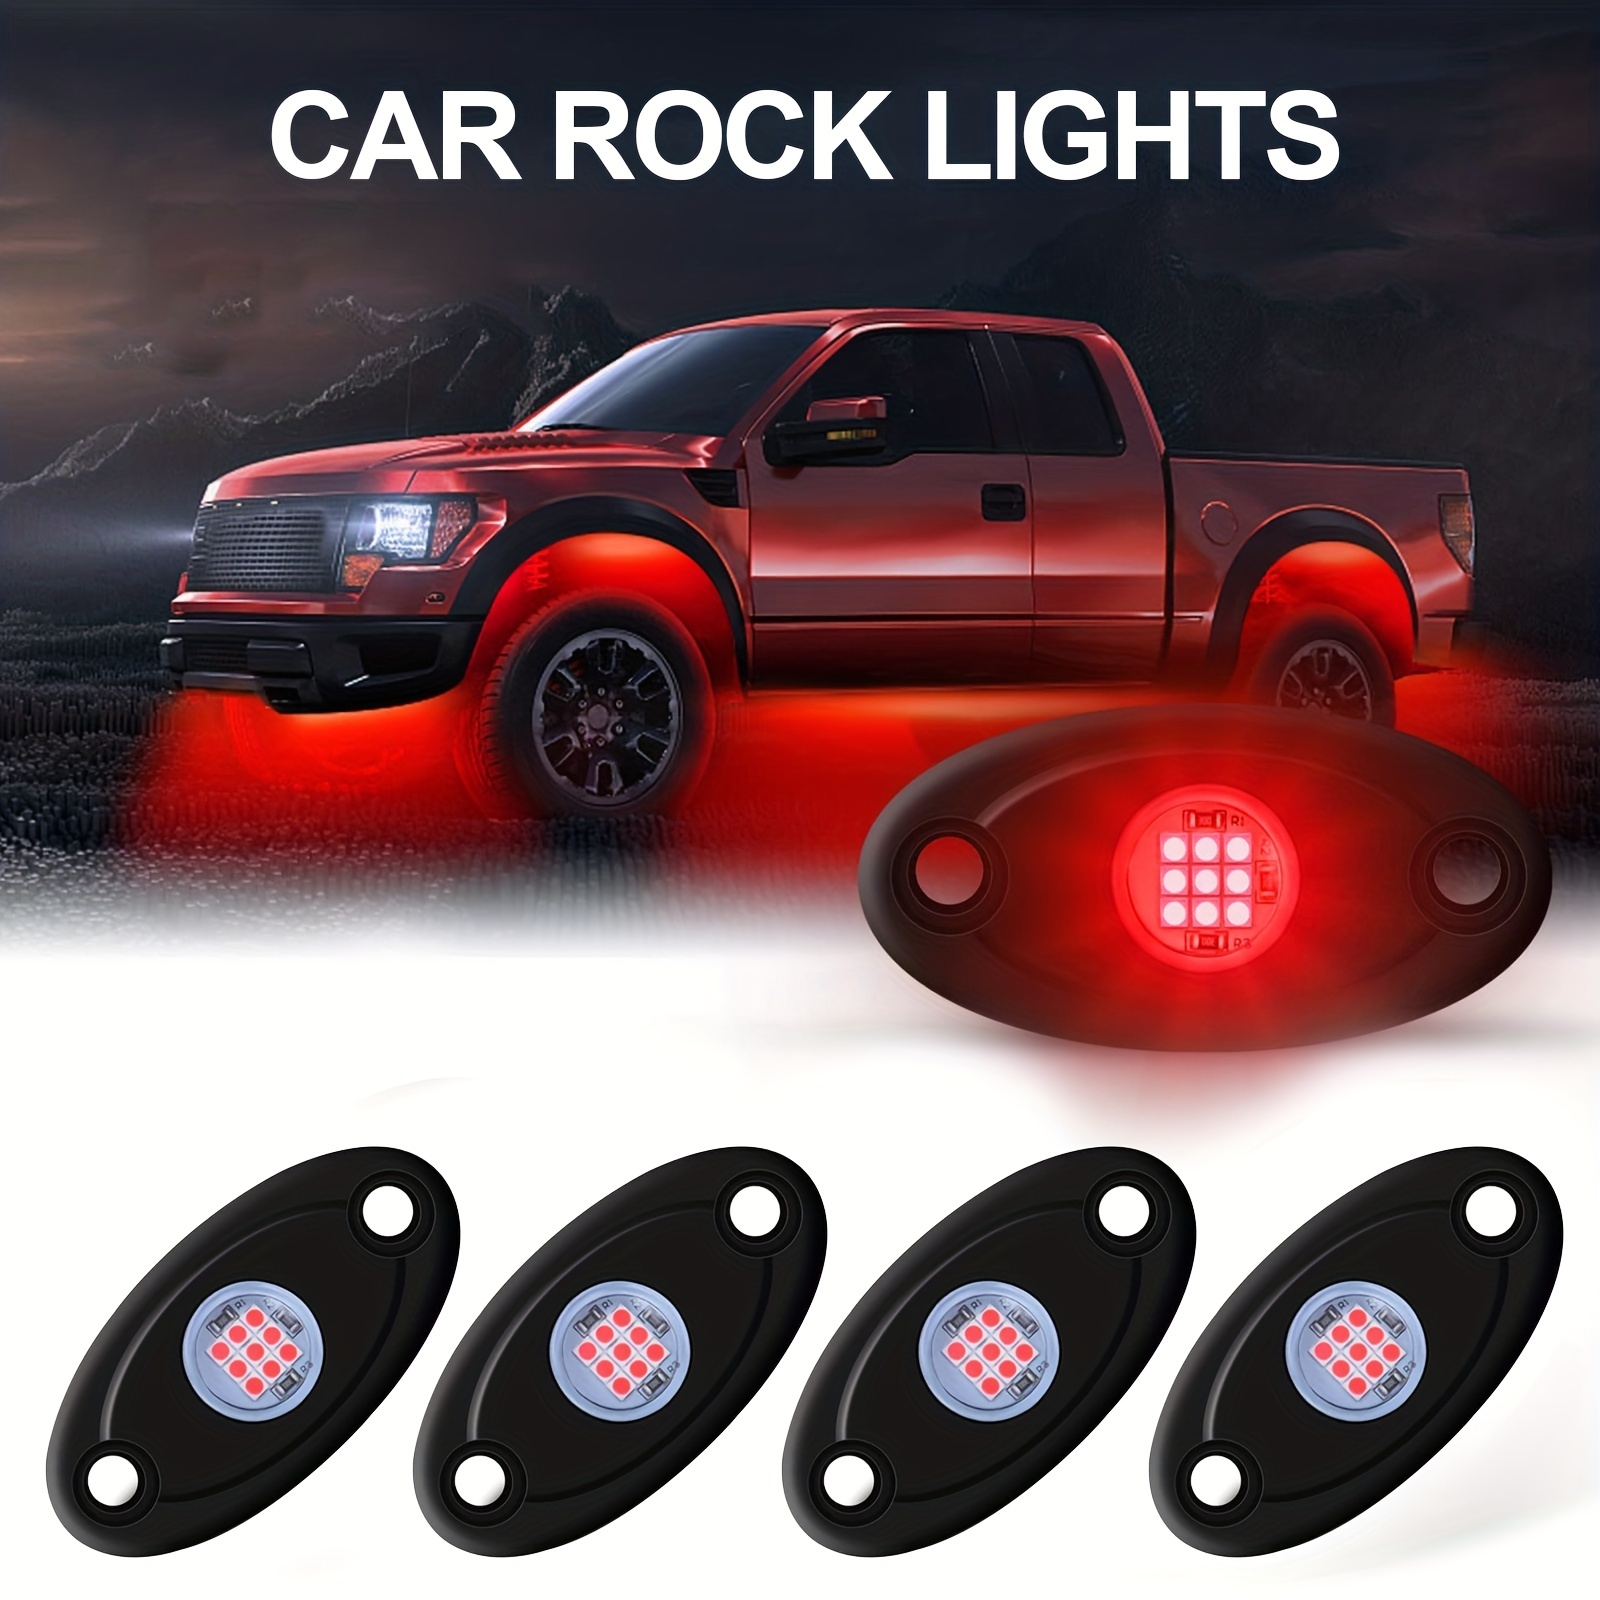 1ziehen Sie 8 Pods Rock Lights Mit App & Wireless Remote Control